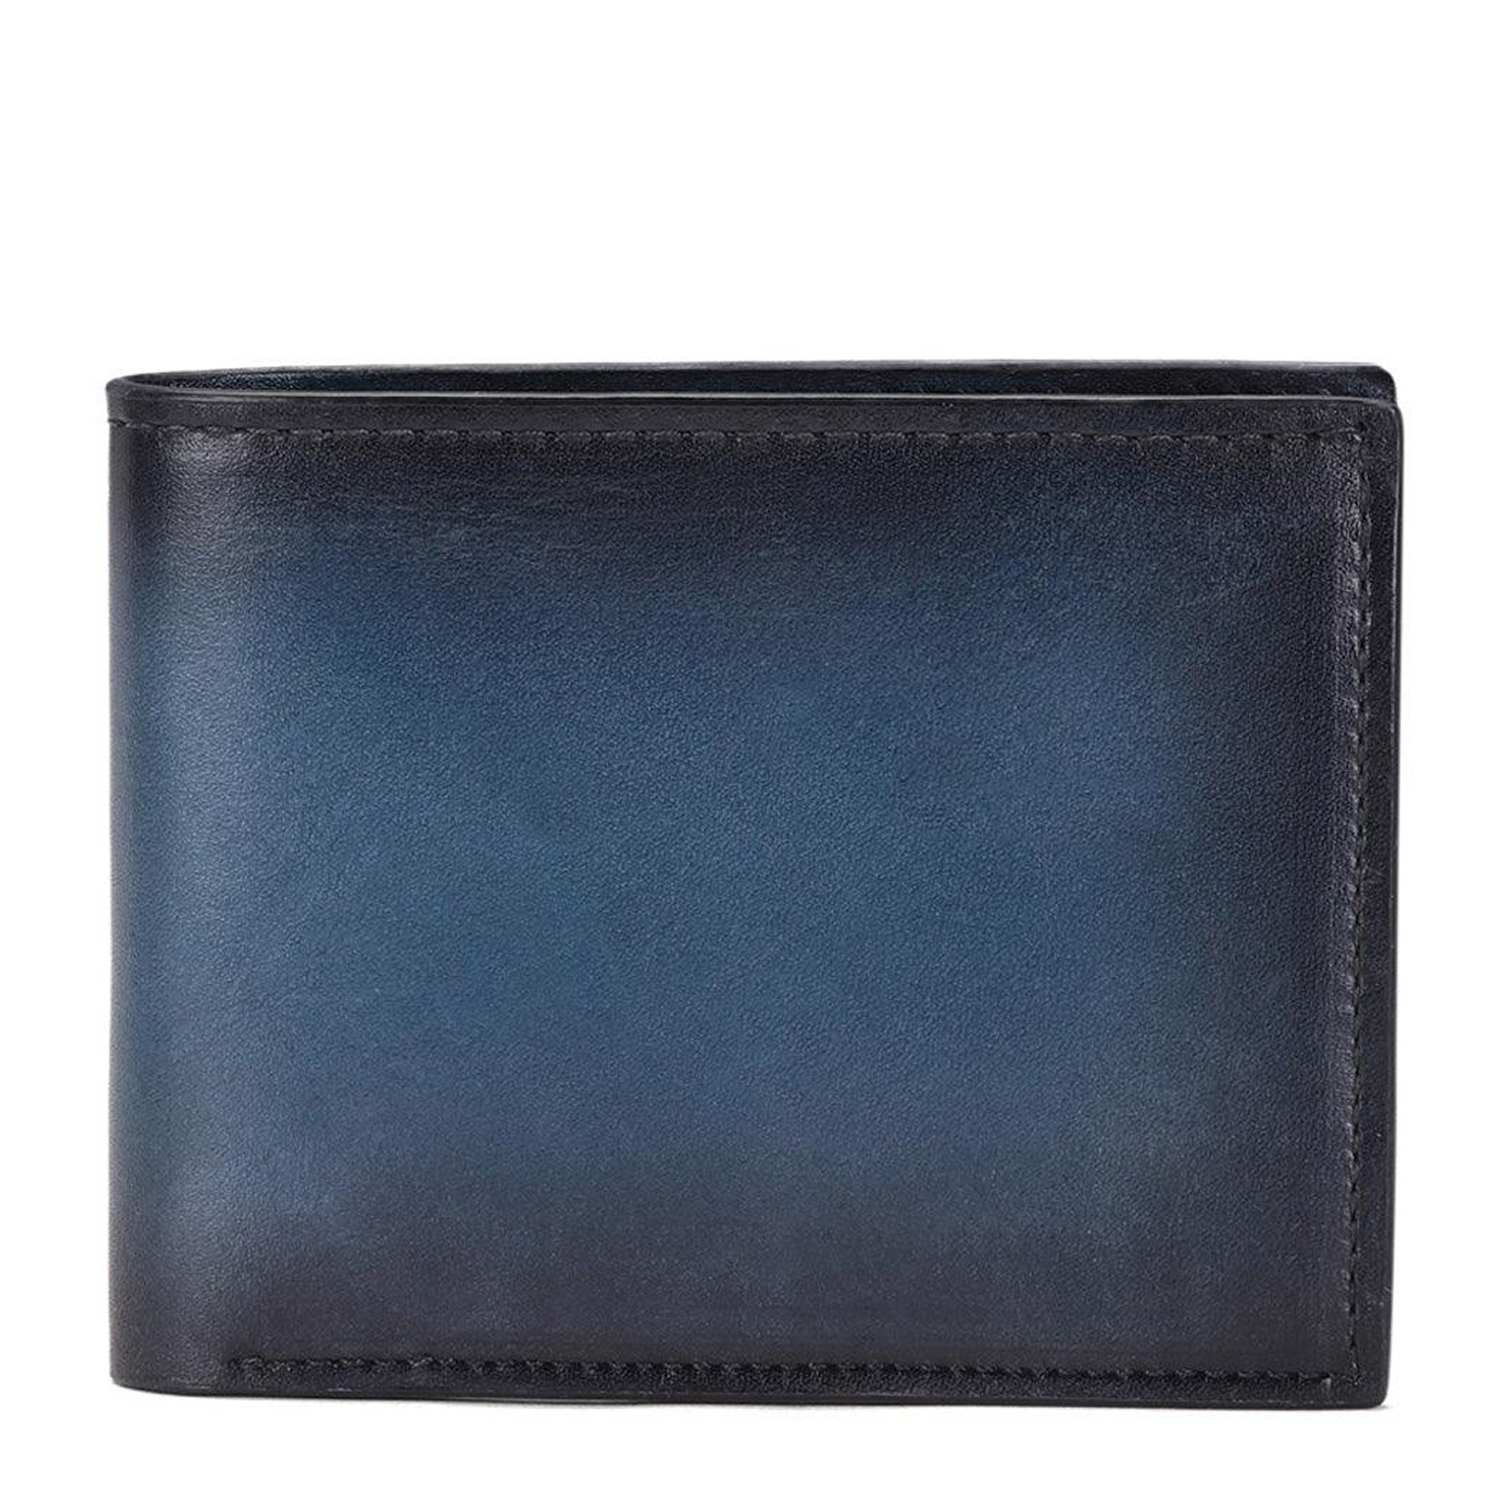 Buy Best Leather Wallets for Men Online – Hidesign